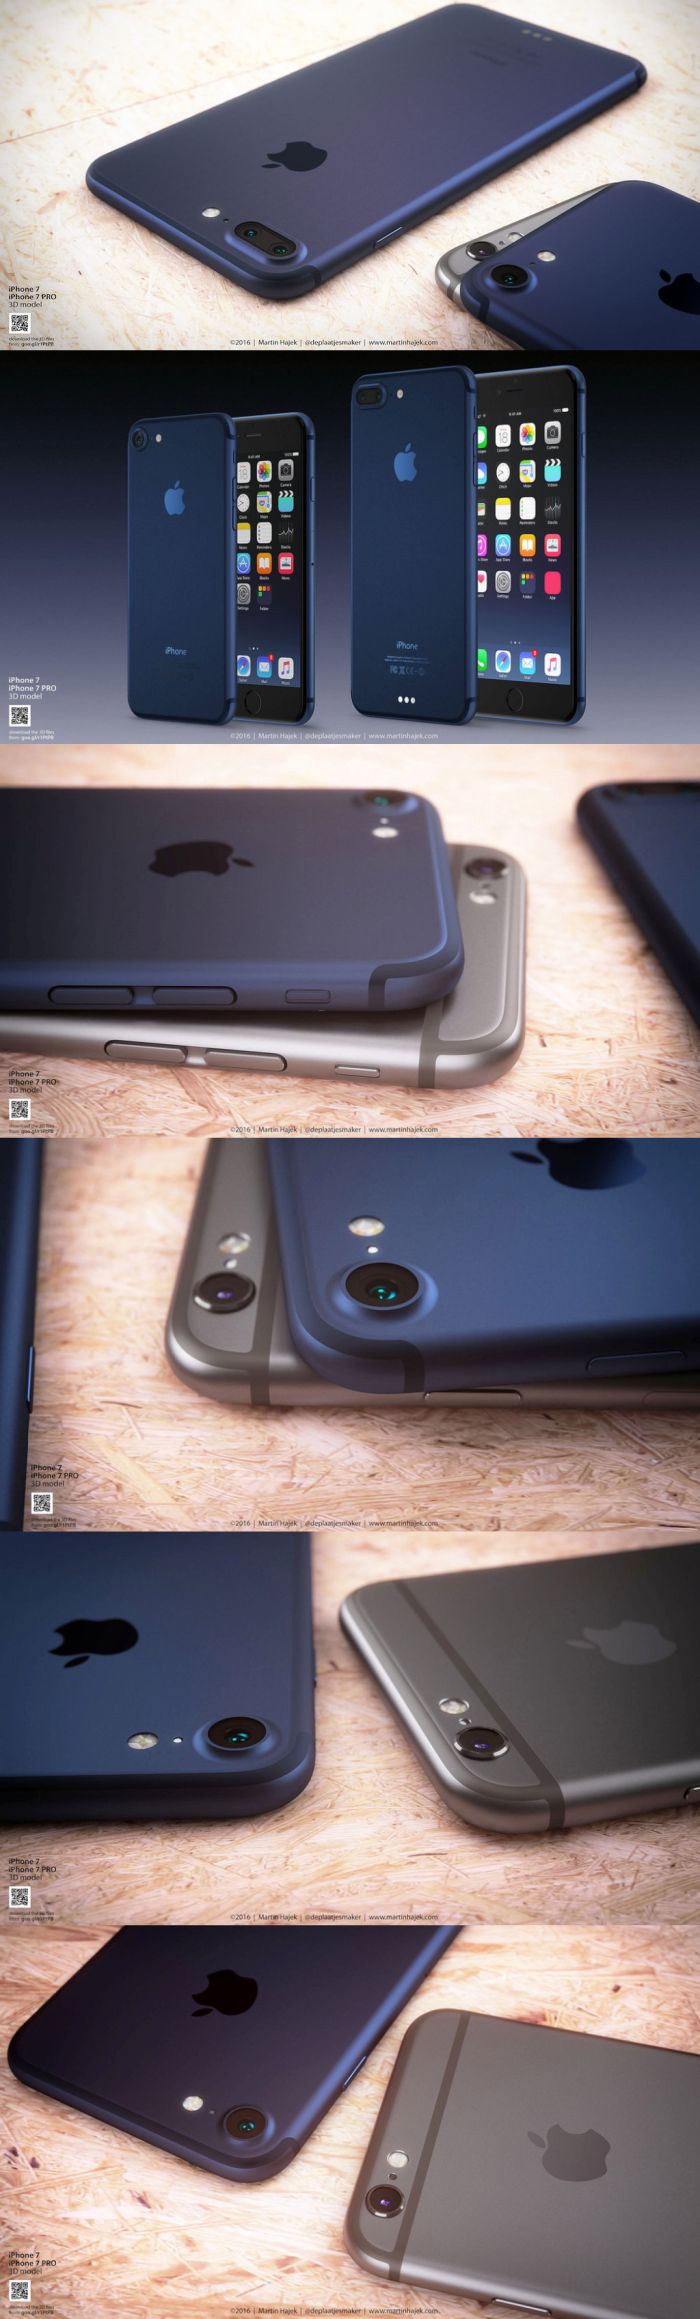 Megszûnik a Space Gray iPhone szín